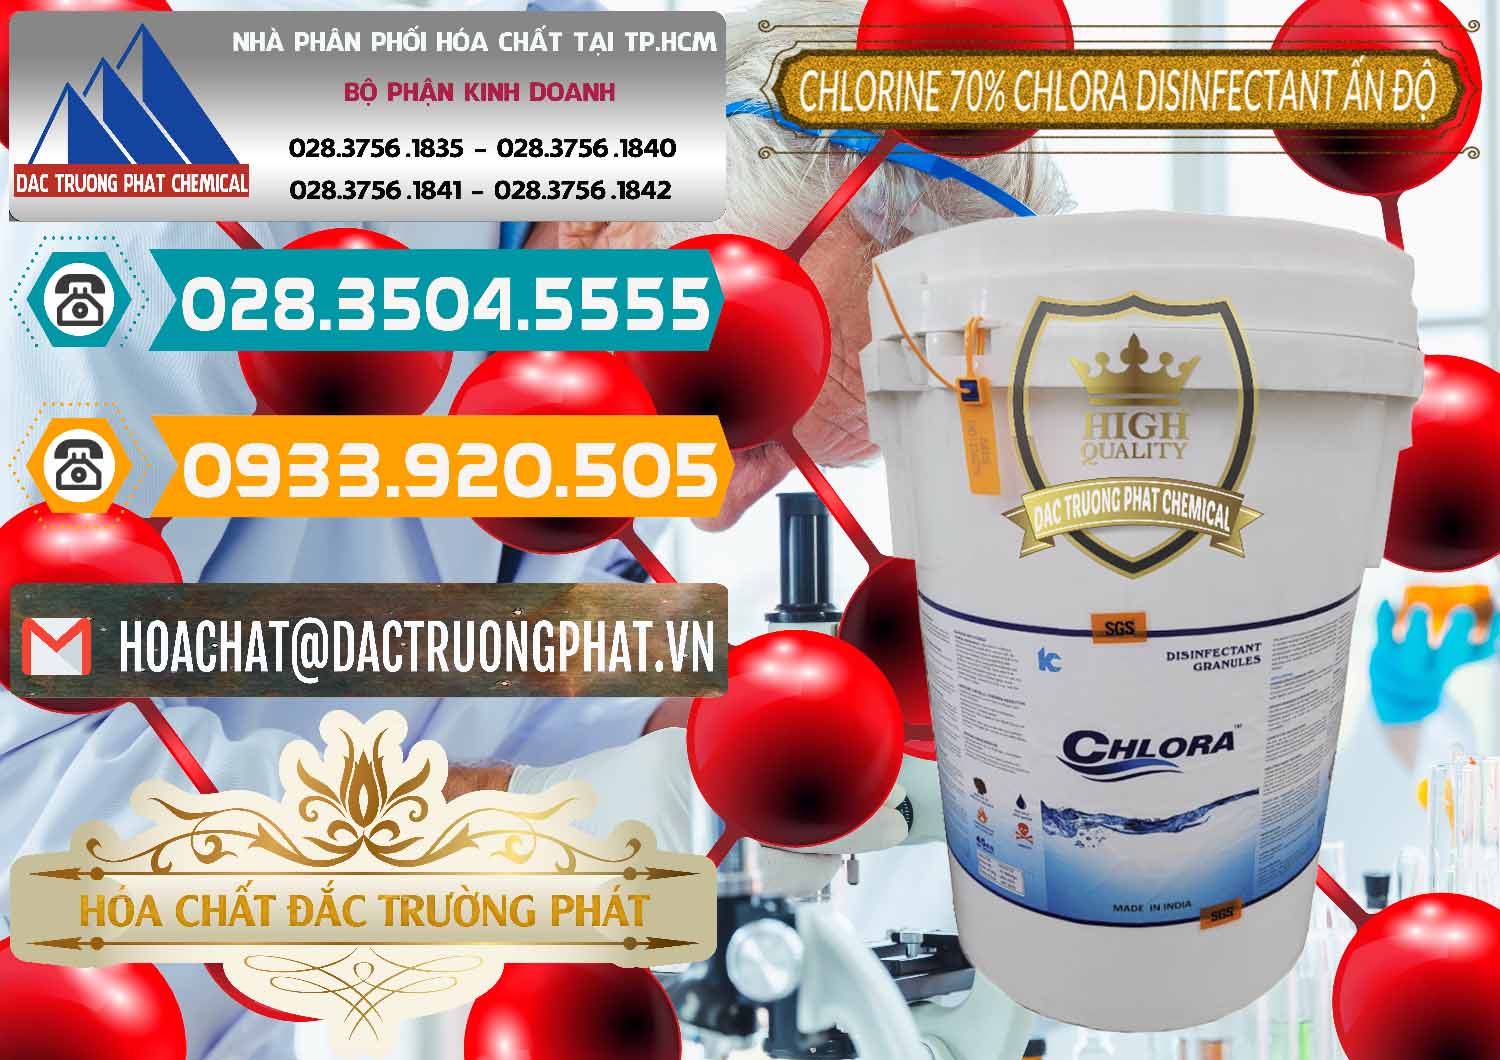 Nơi cung cấp và bán Chlorine – Clorin 70% Chlora Disinfectant Ấn Độ India - 0213 - Nhà cung cấp và phân phối hóa chất tại TP.HCM - congtyhoachat.vn